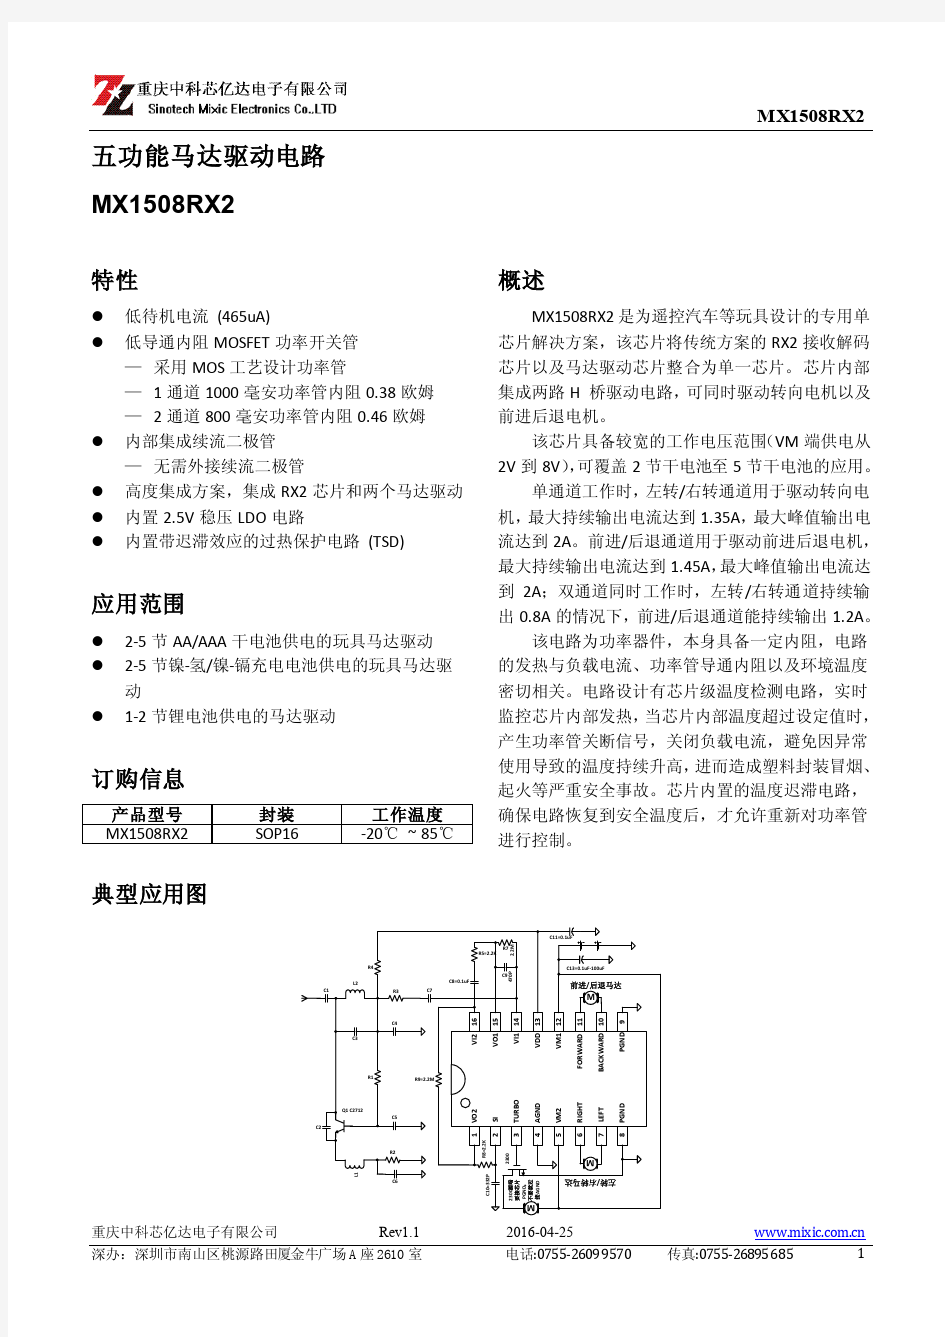 马达驱动电路MX1508RX2产品手册_V1.1